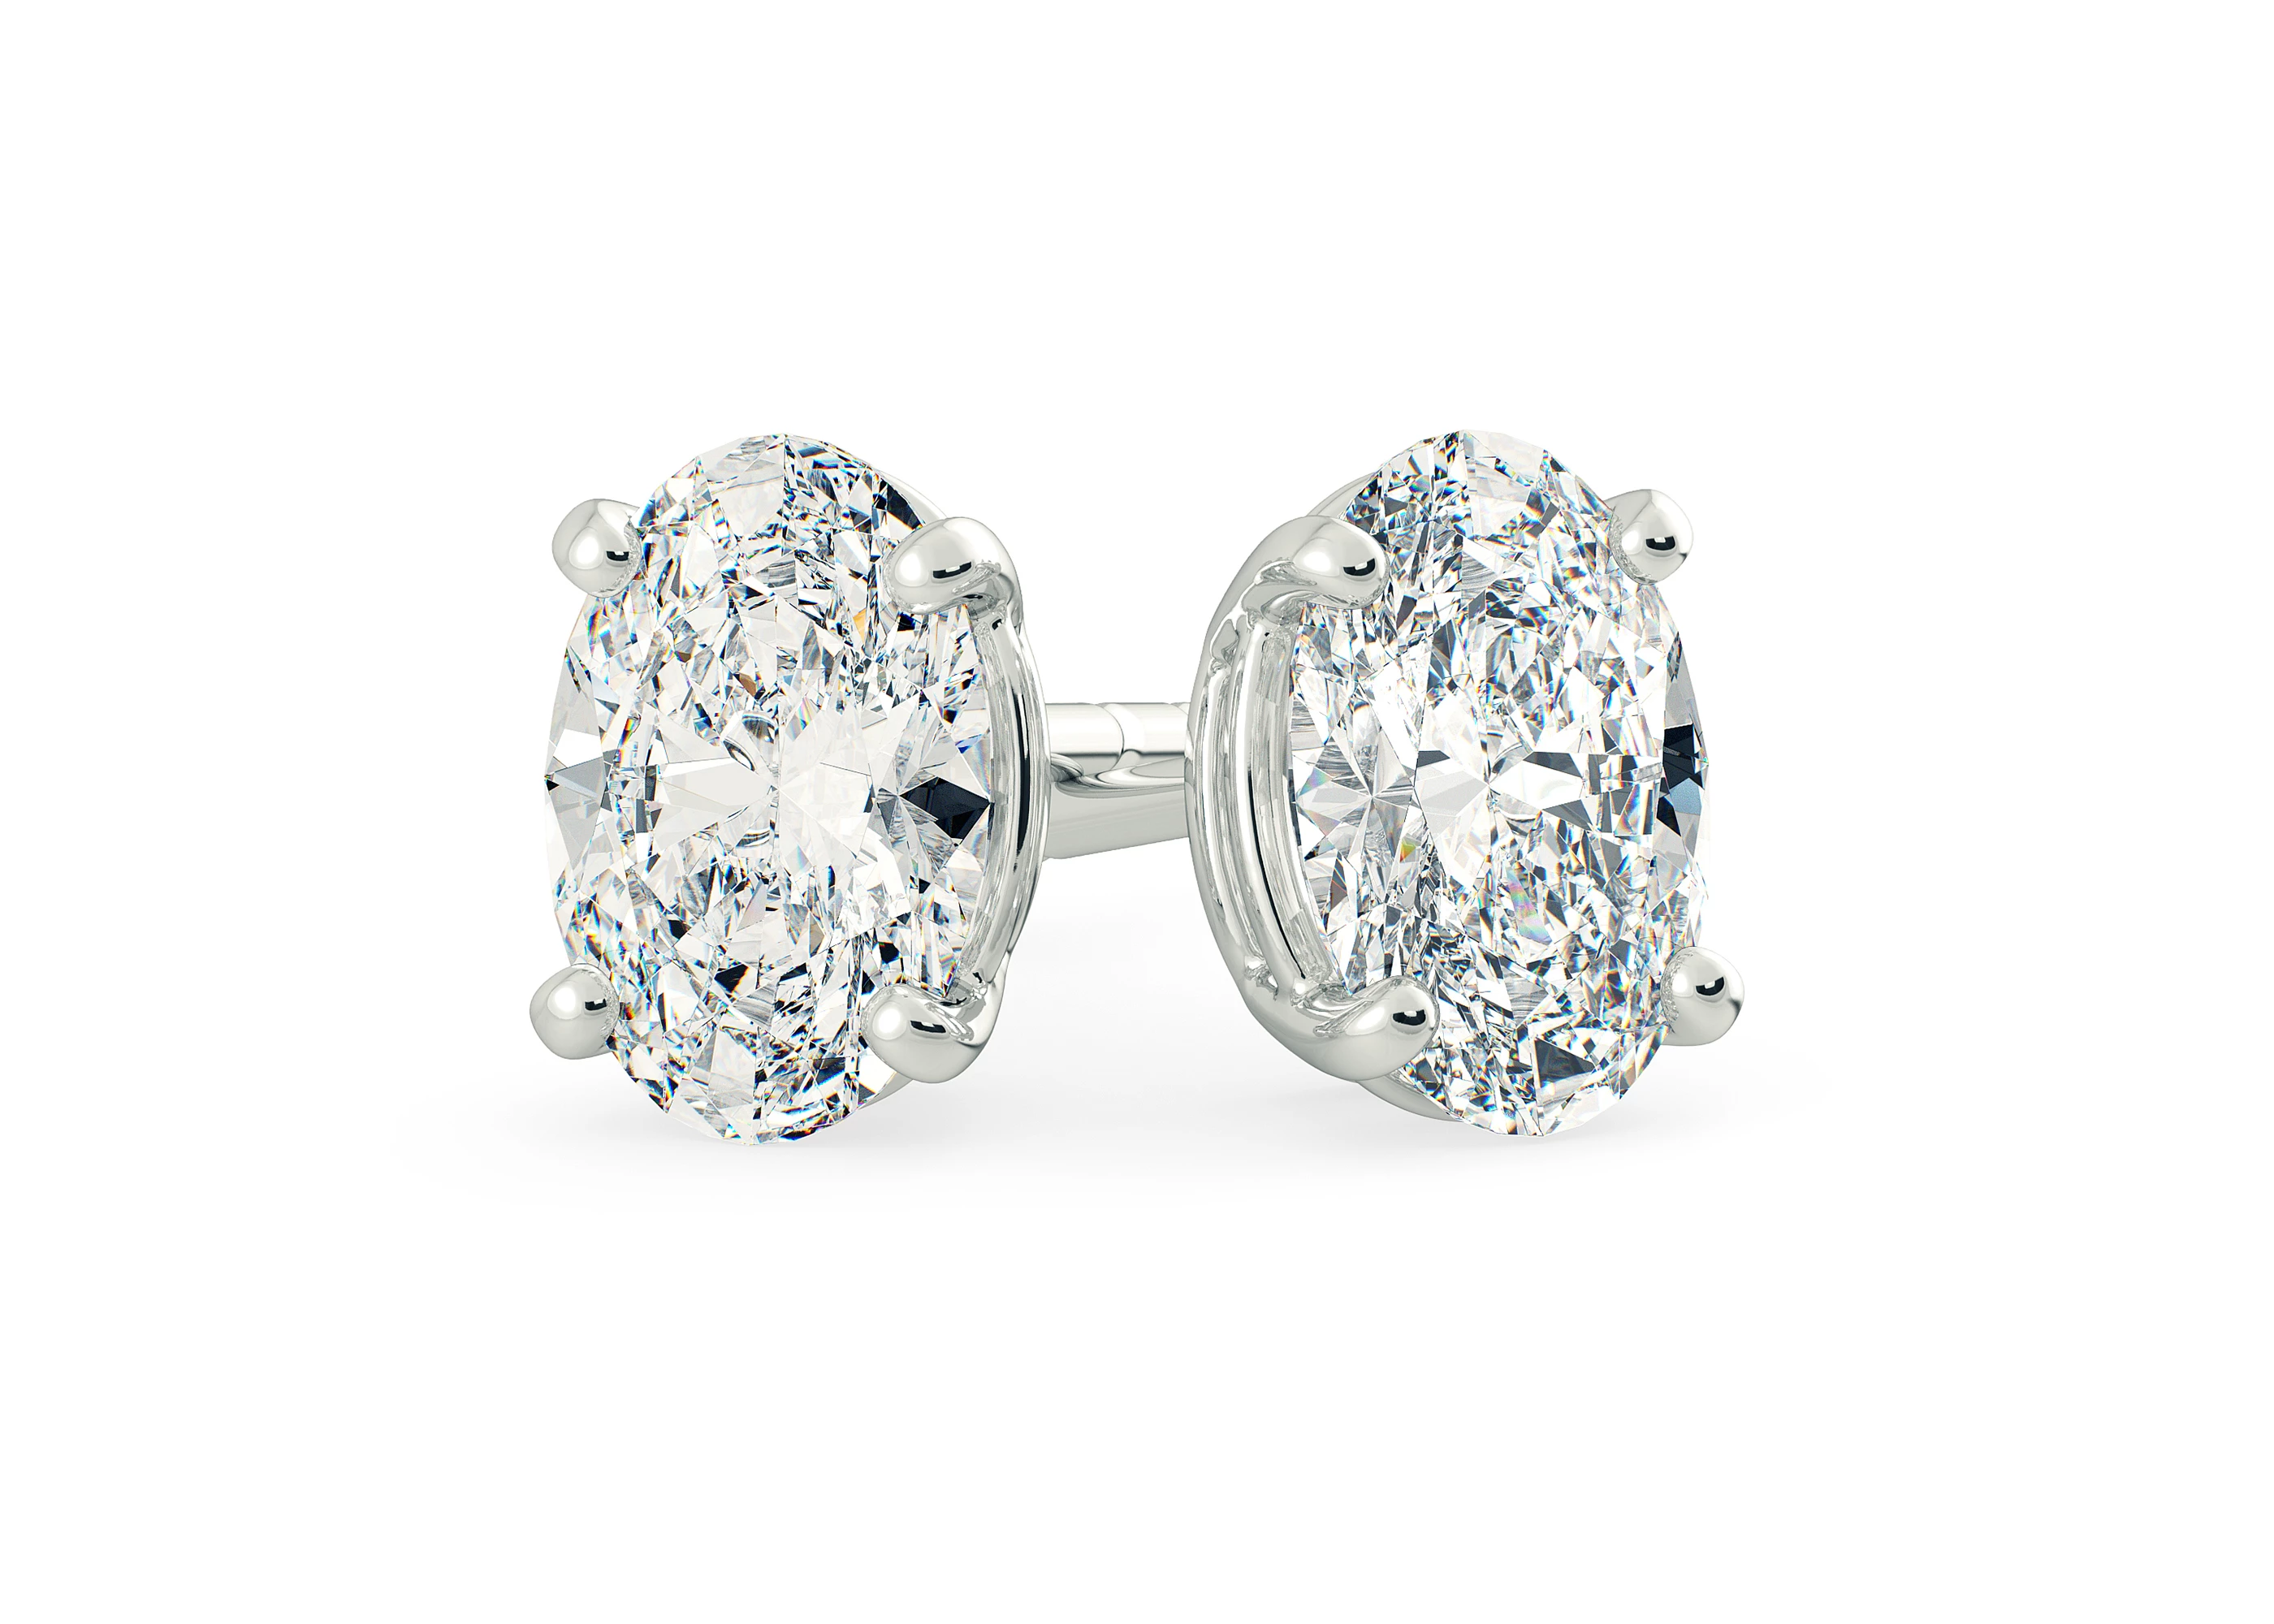 One Carat Oval Diamond Stud Earrings in 9K White Gold